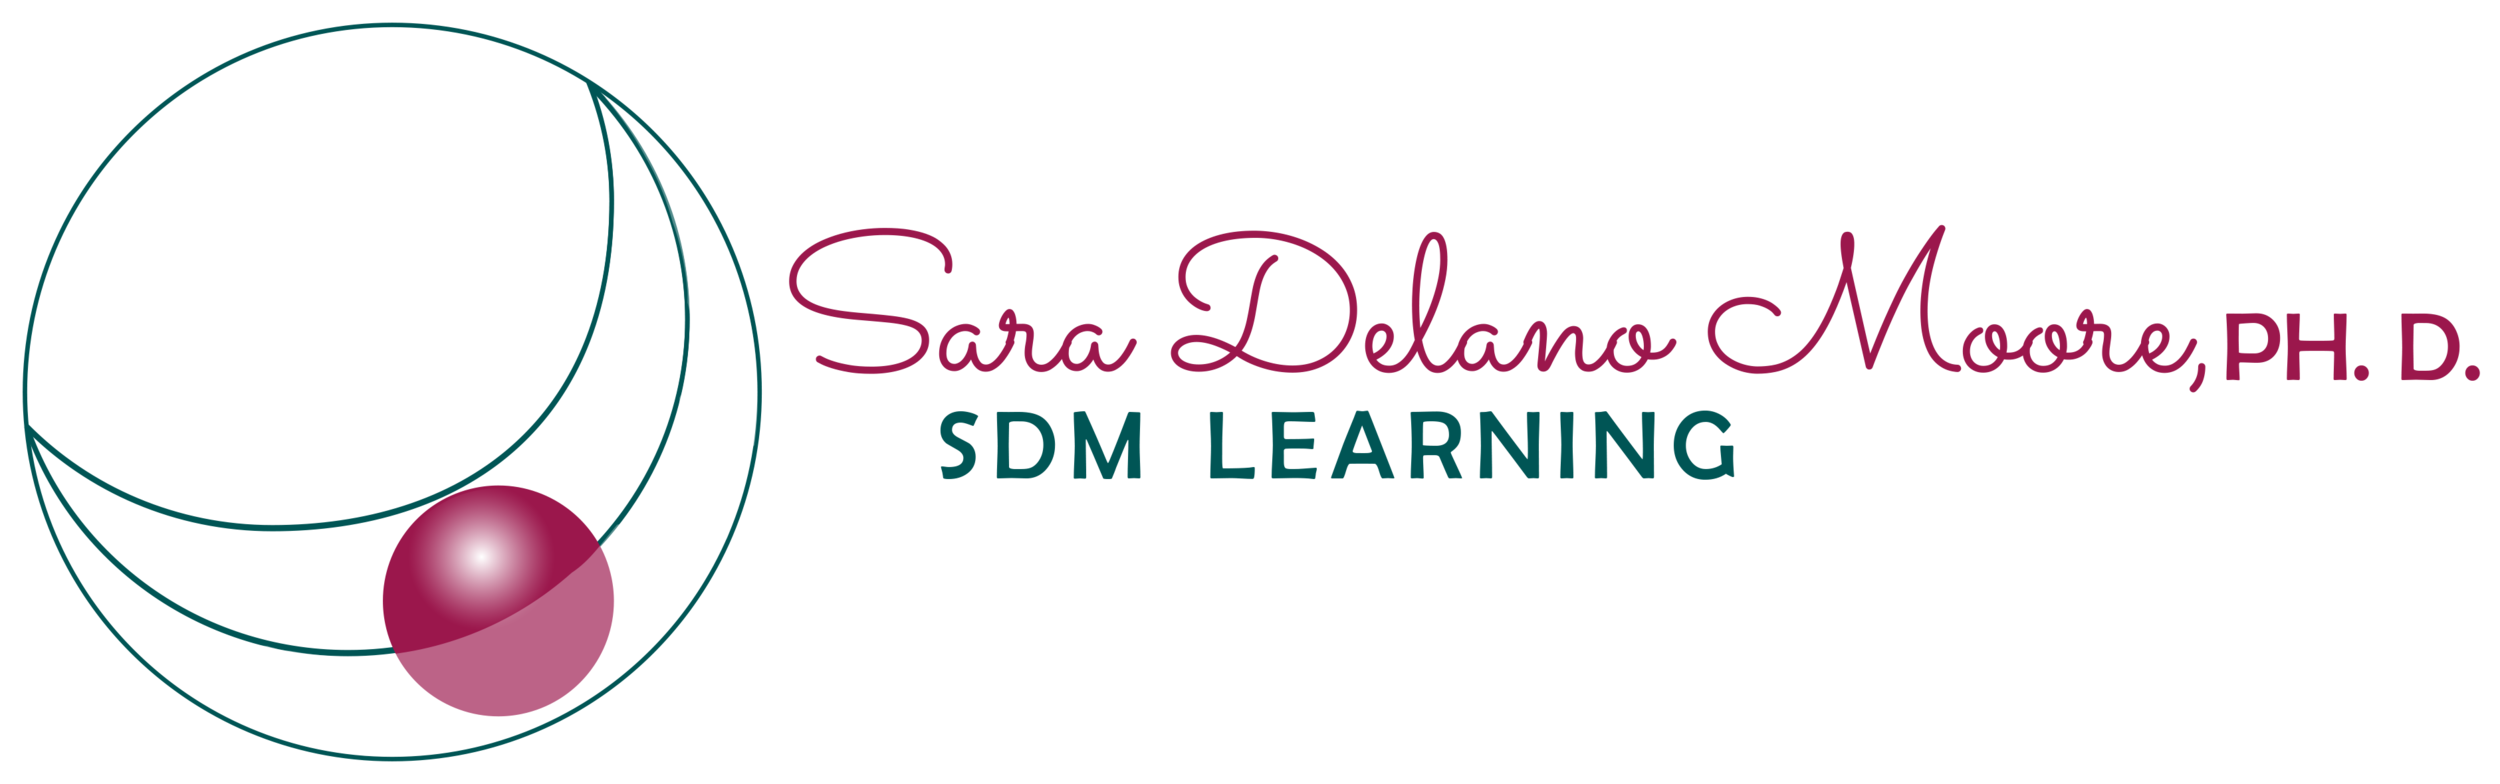 SDM Learning